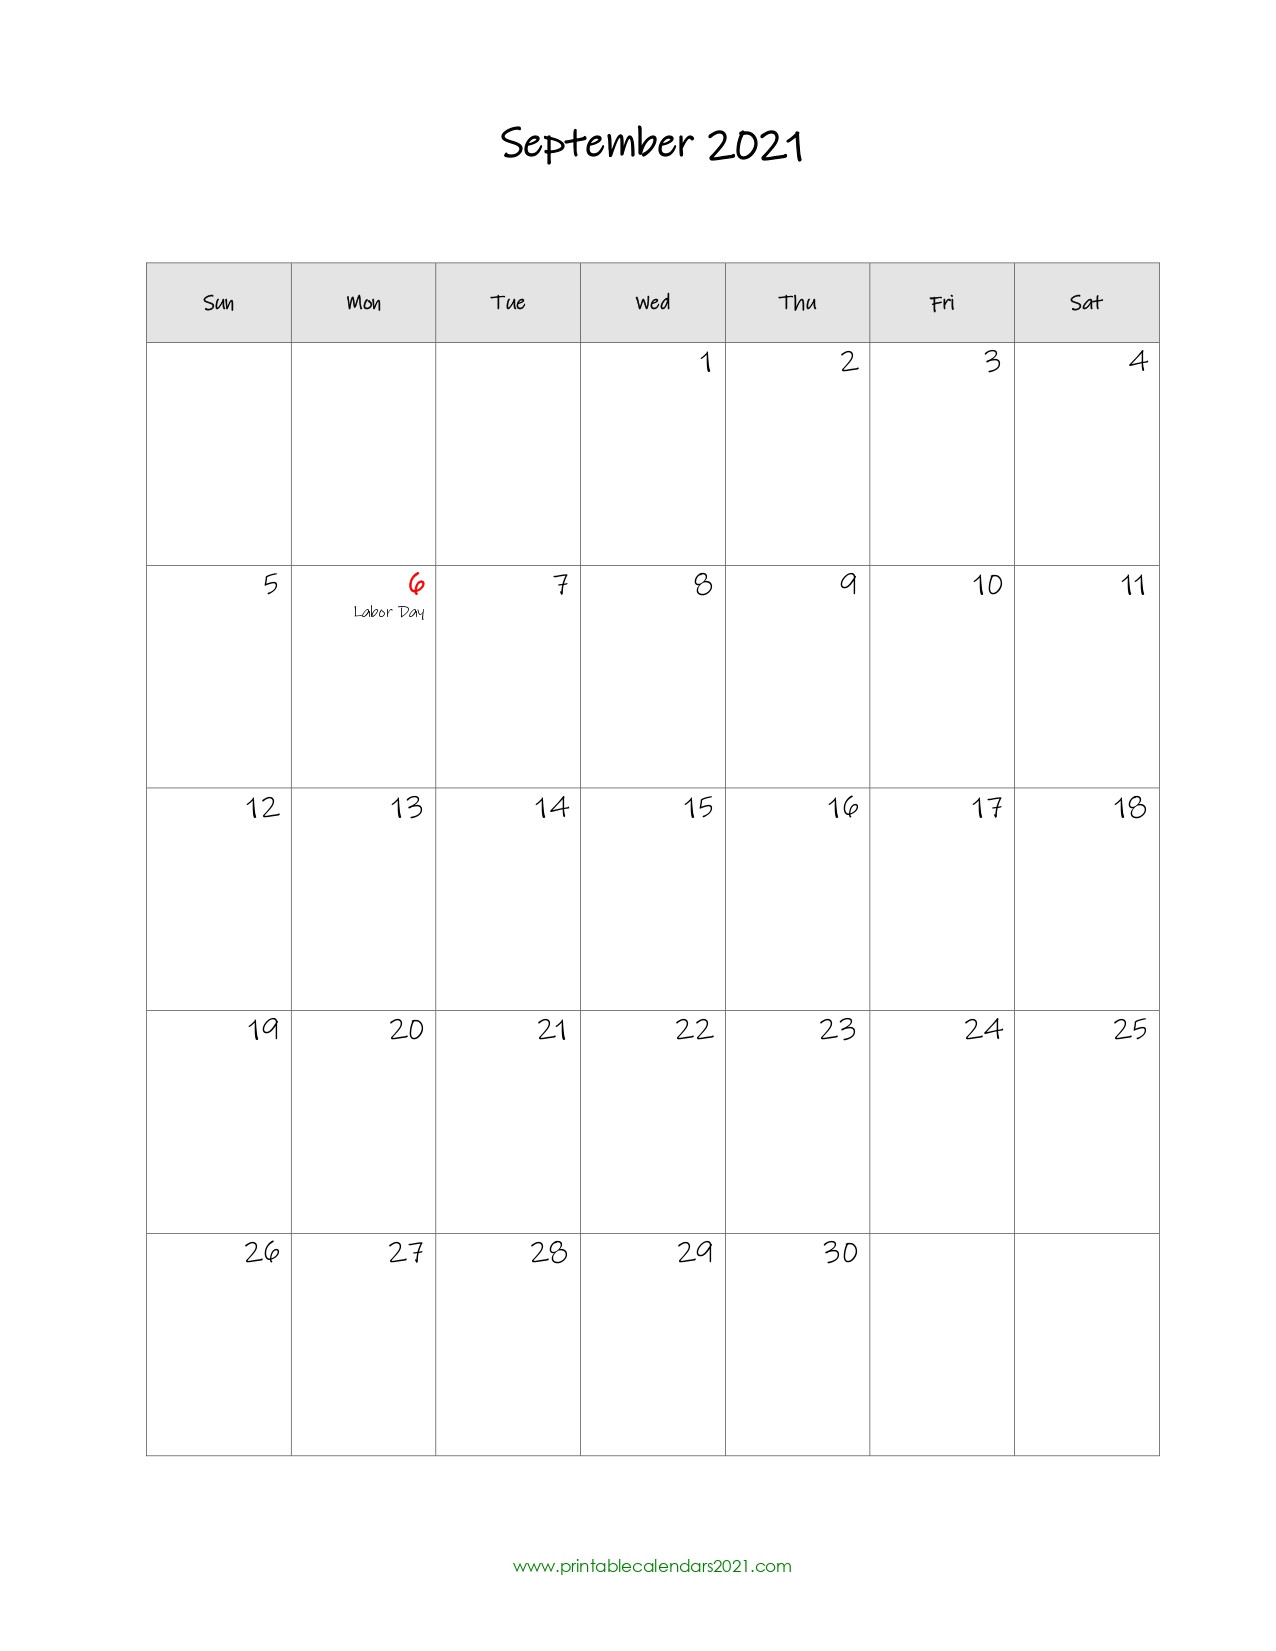 September 2021 Calendar | Calendar Printables Free Blank-September 2021 Calendar Printable Template